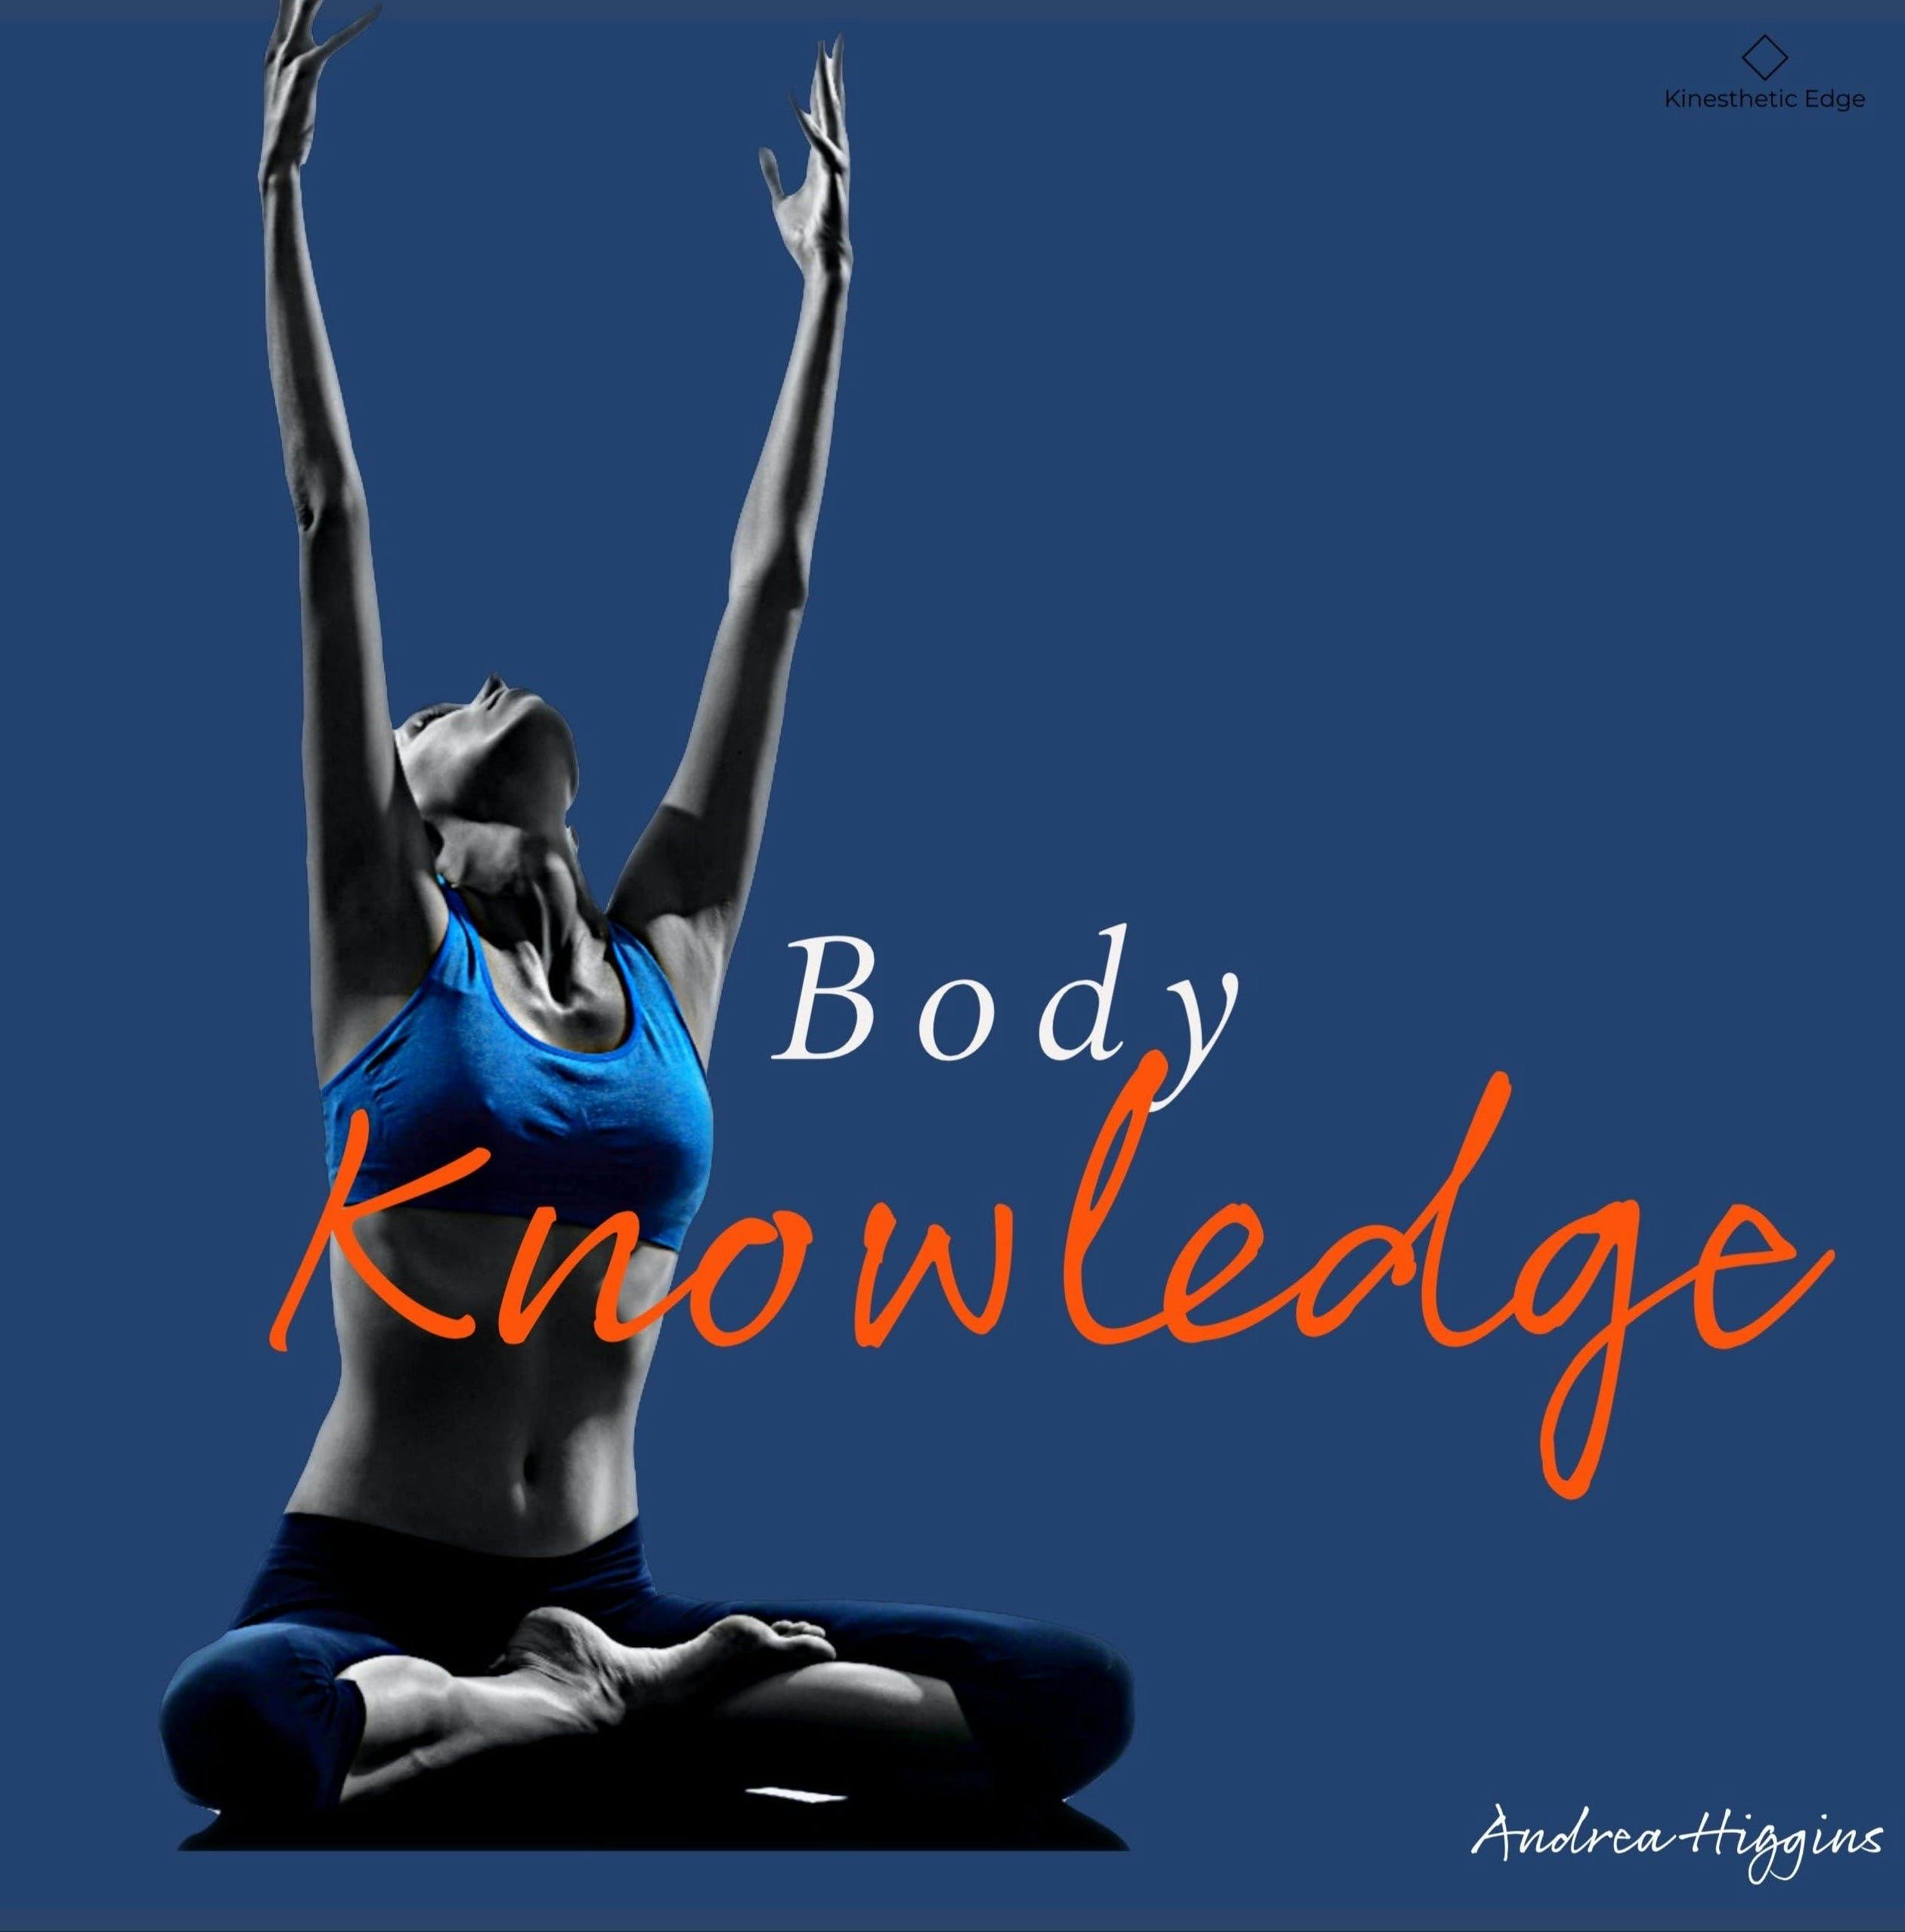 Body Knowledge MP3s